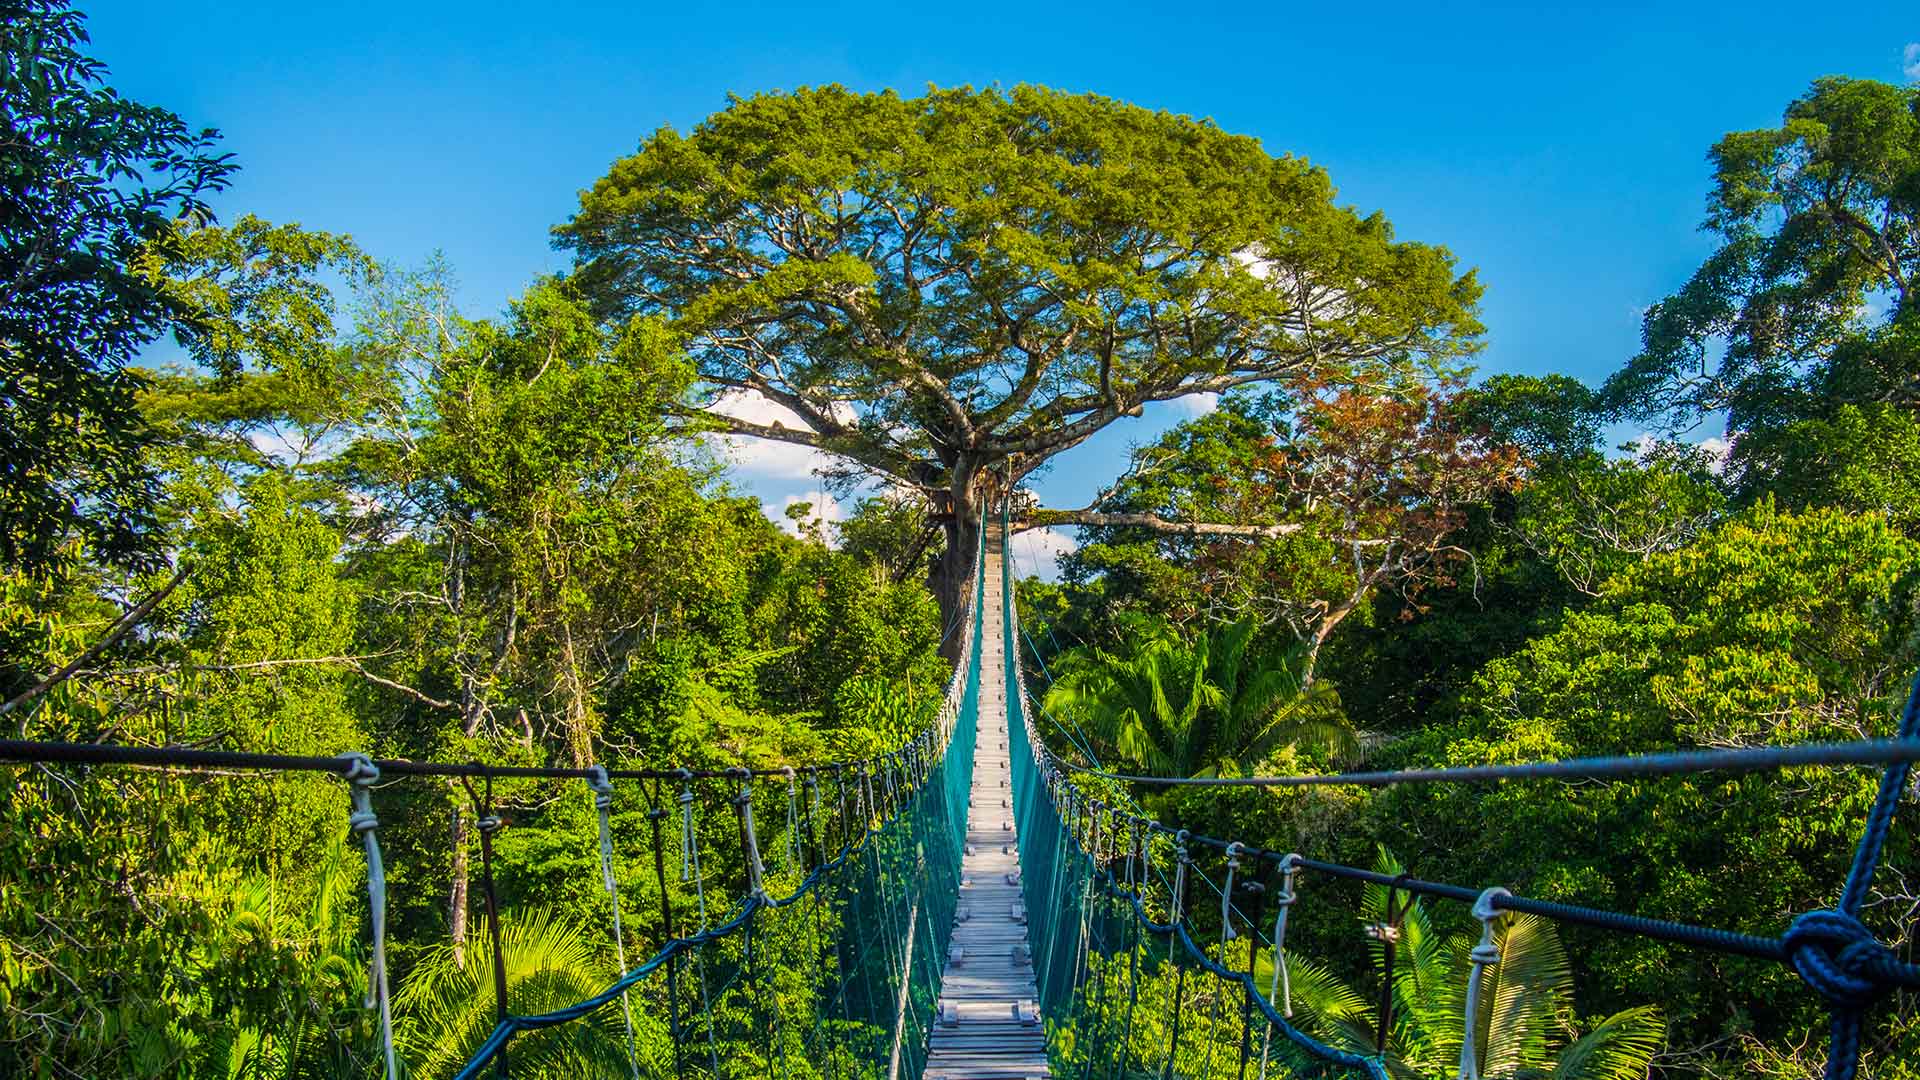 Suspension bridge in Tambopata National Reserve